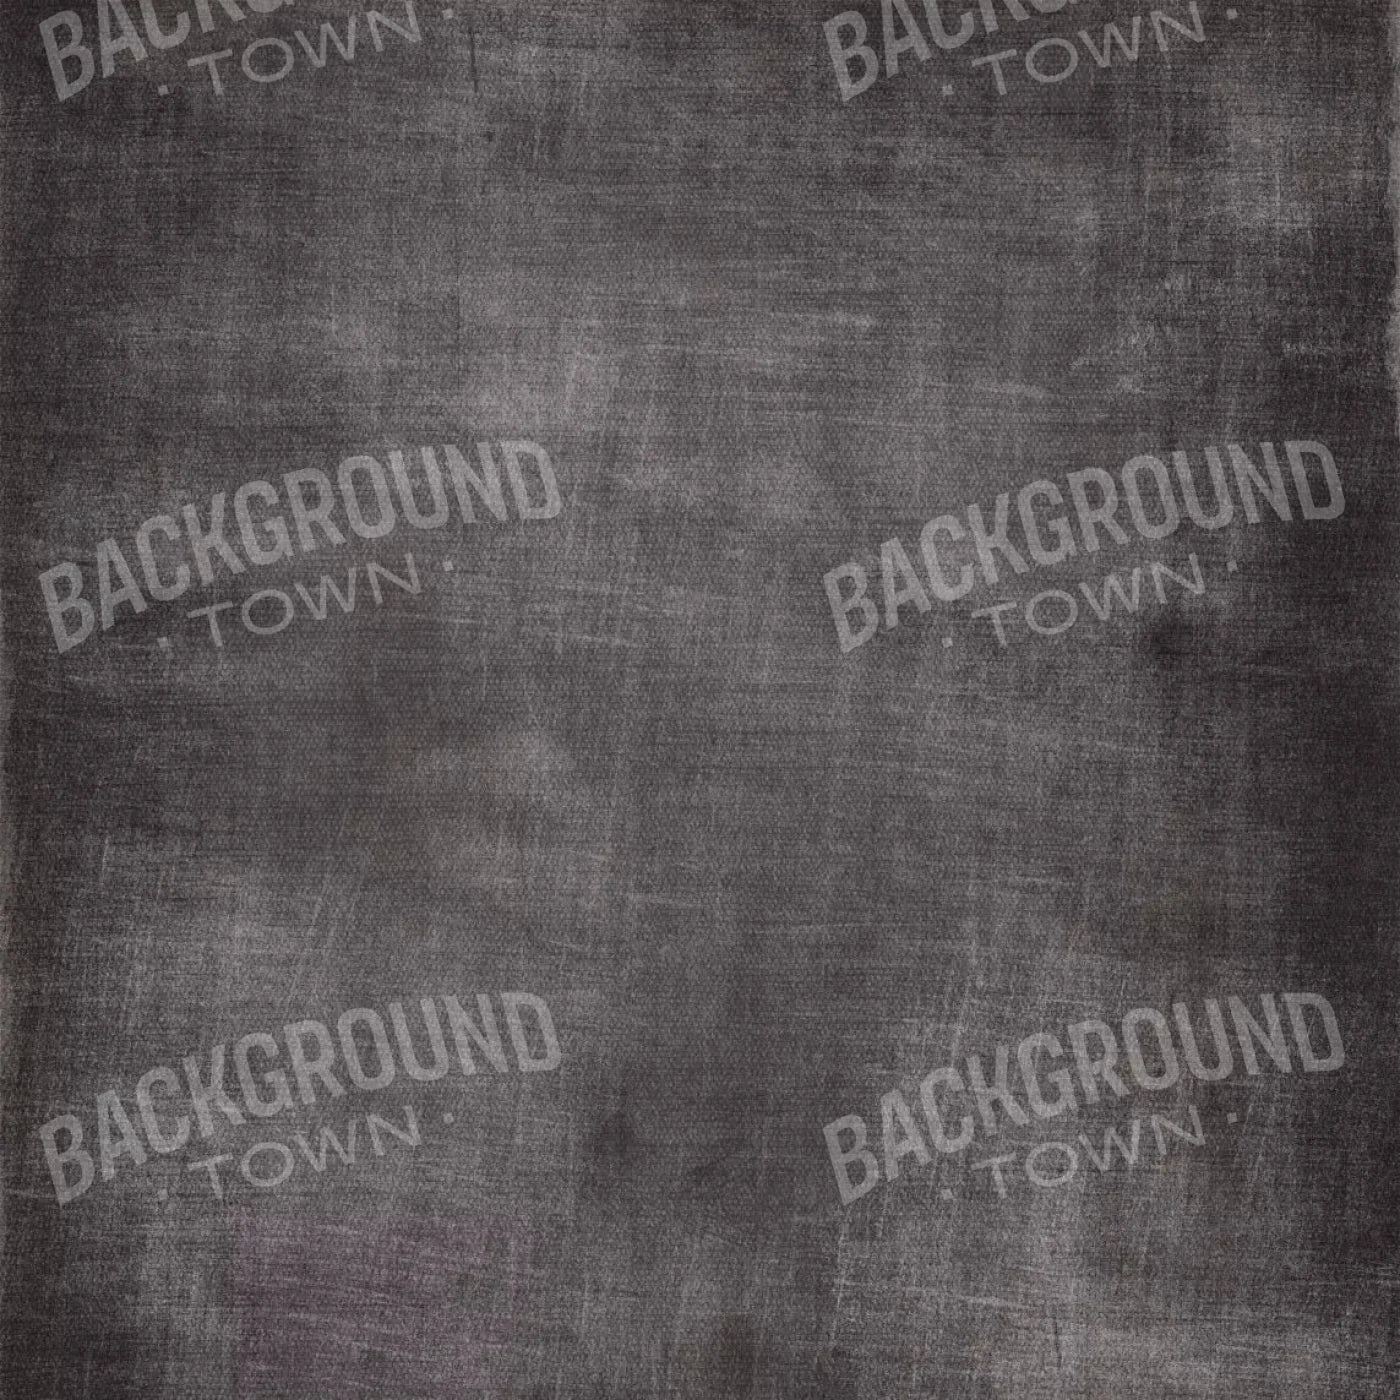 Blackboard 8X8 Fleece ( 96 X Inch ) Backdrop